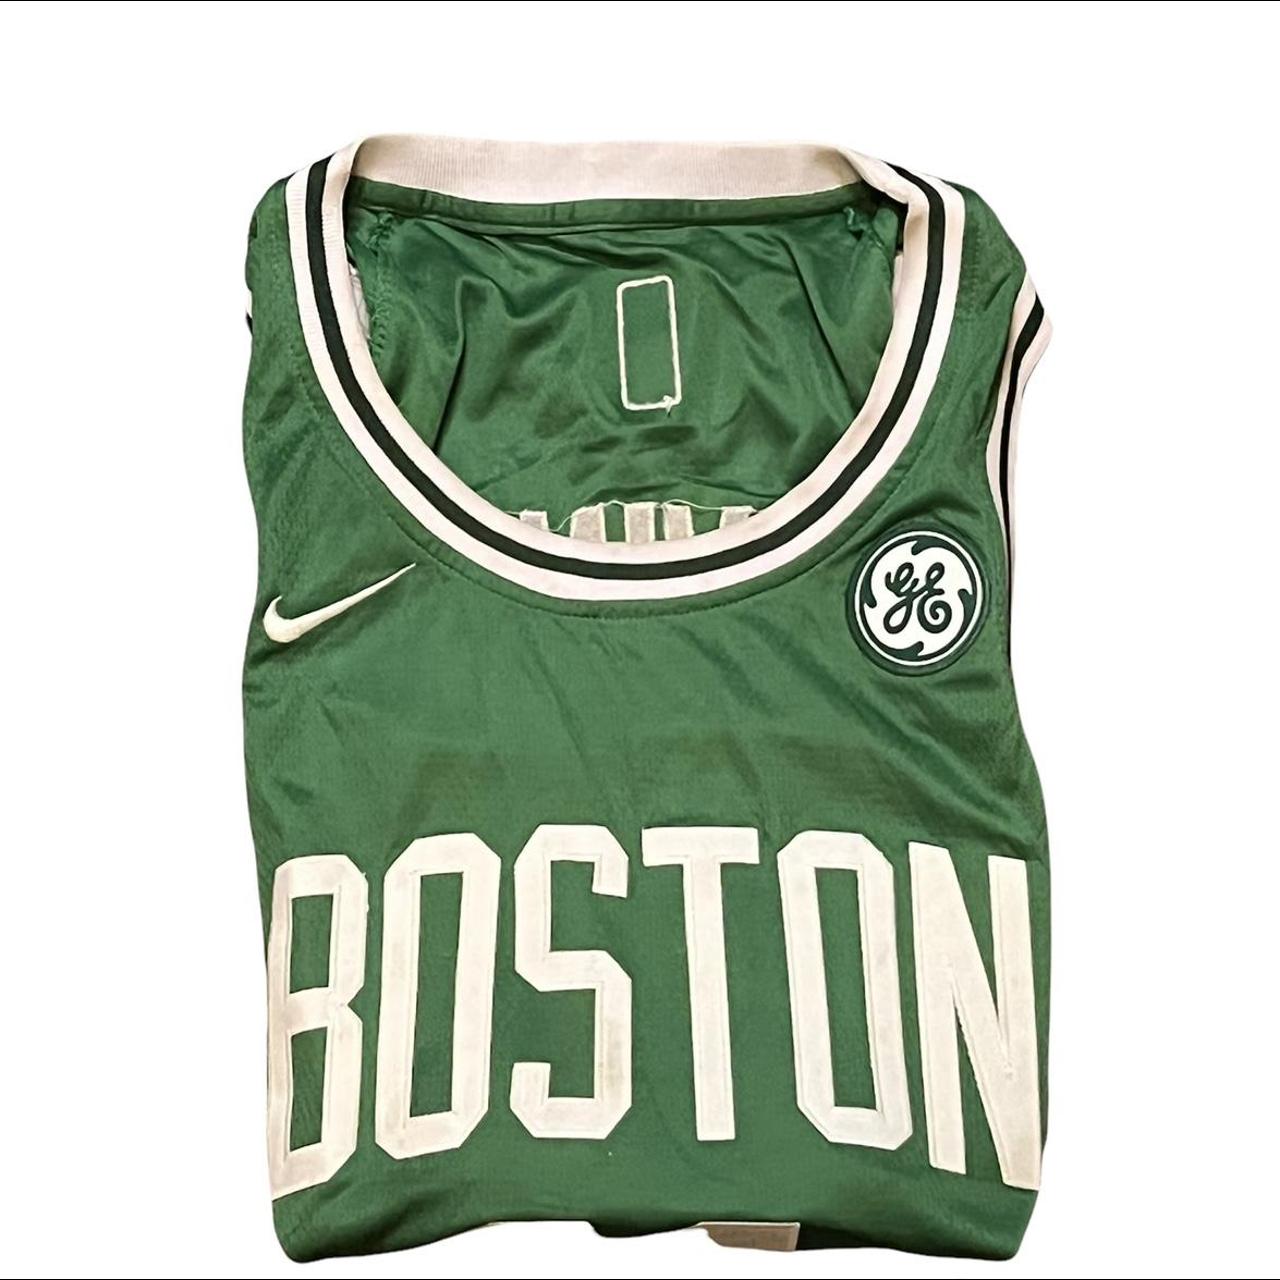 Nike Kyrie Irving Boston Celtics NBA Swingman Jersey - Depop